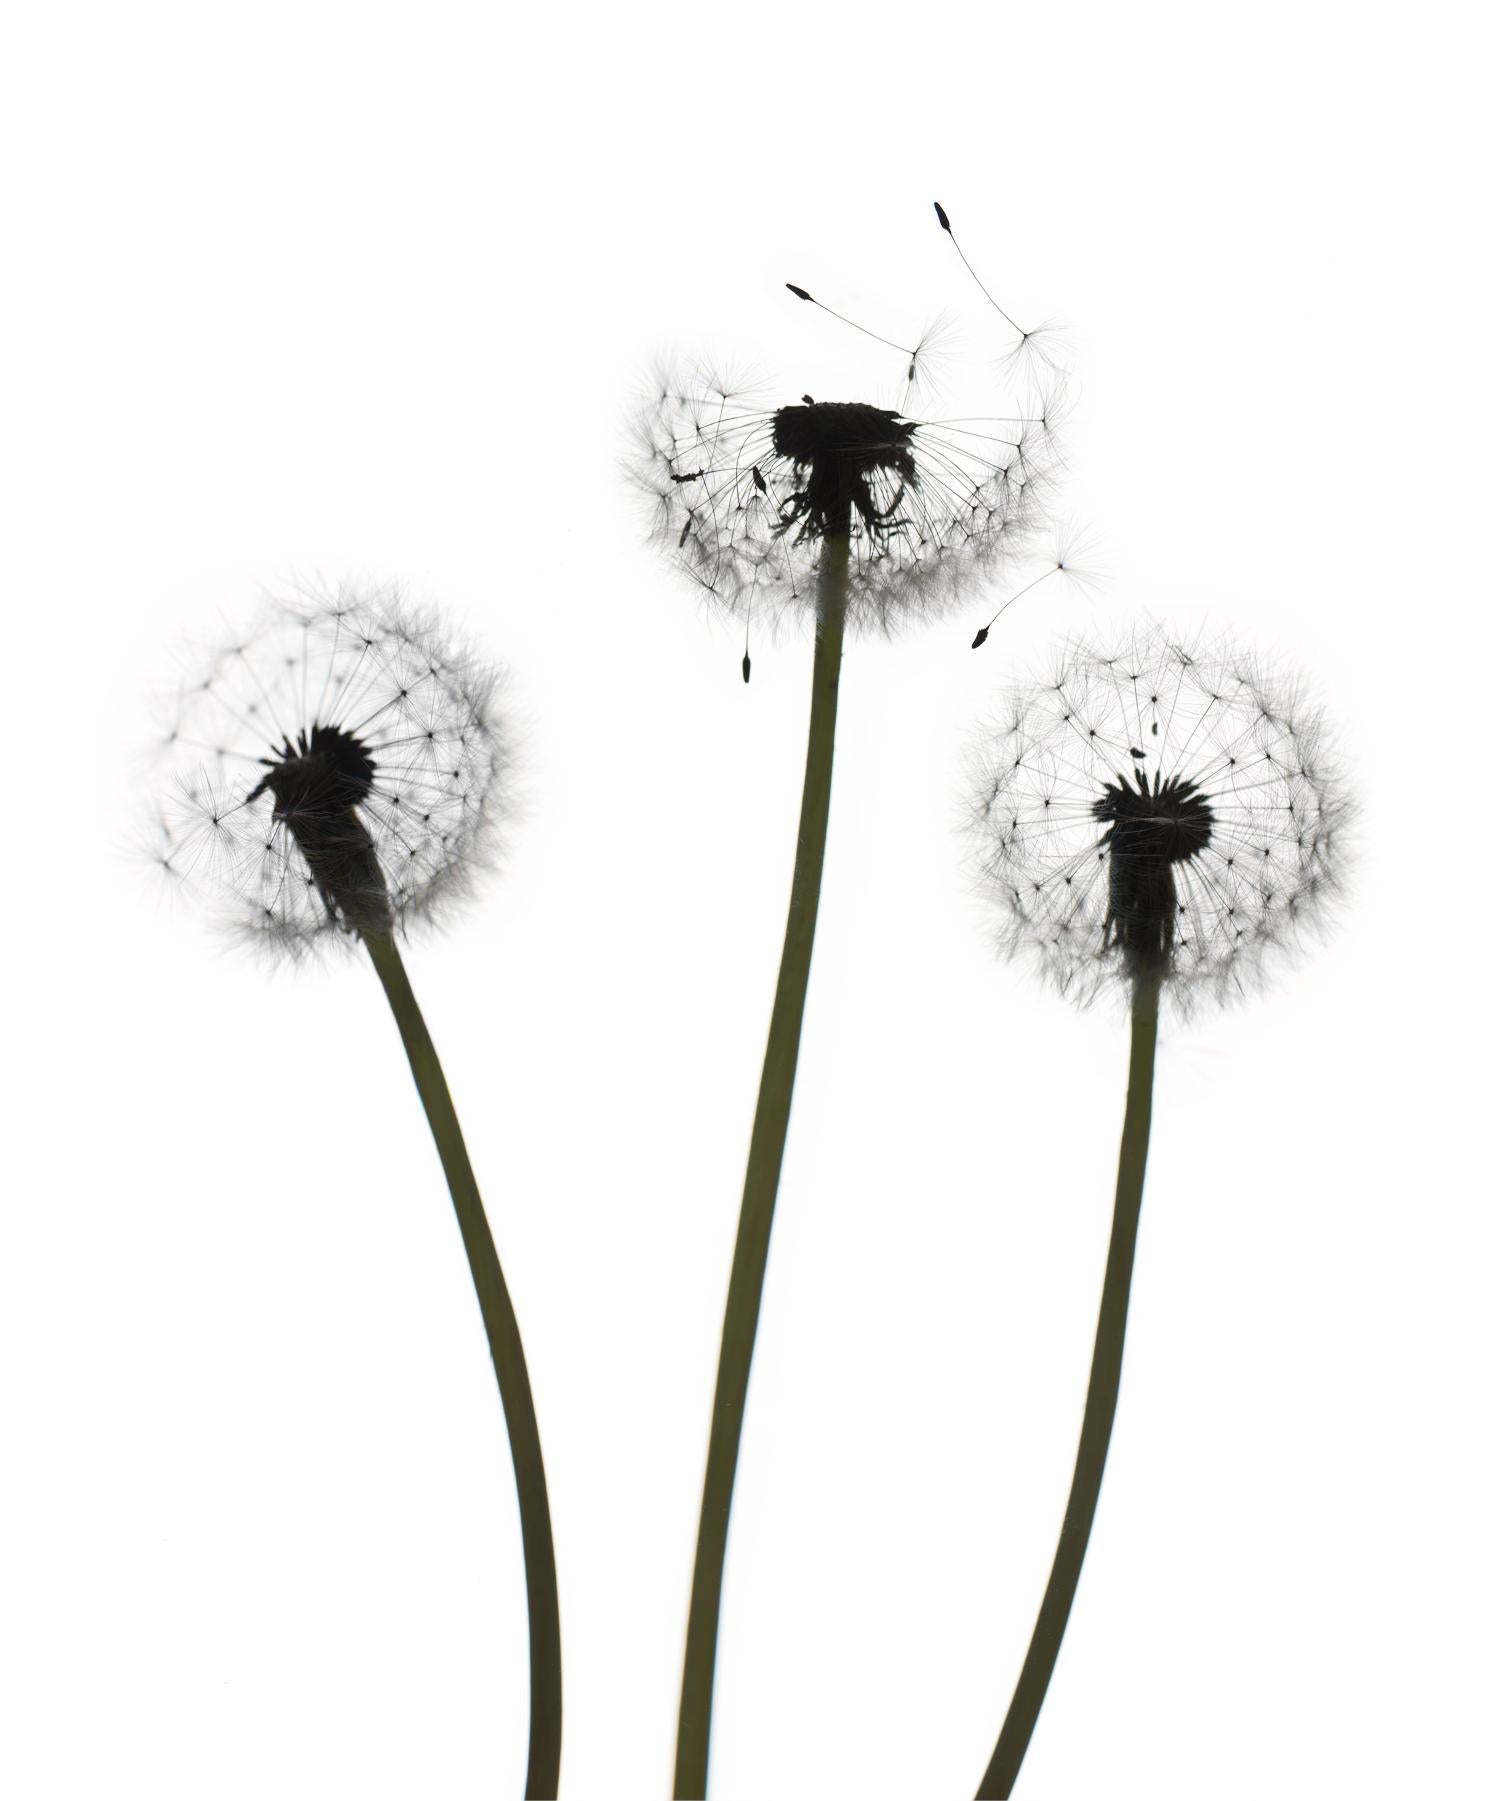 Ohne Titel - Blume 147 (Weiß): Stillleben-Fotografie von Zwiebeln auf Weiß